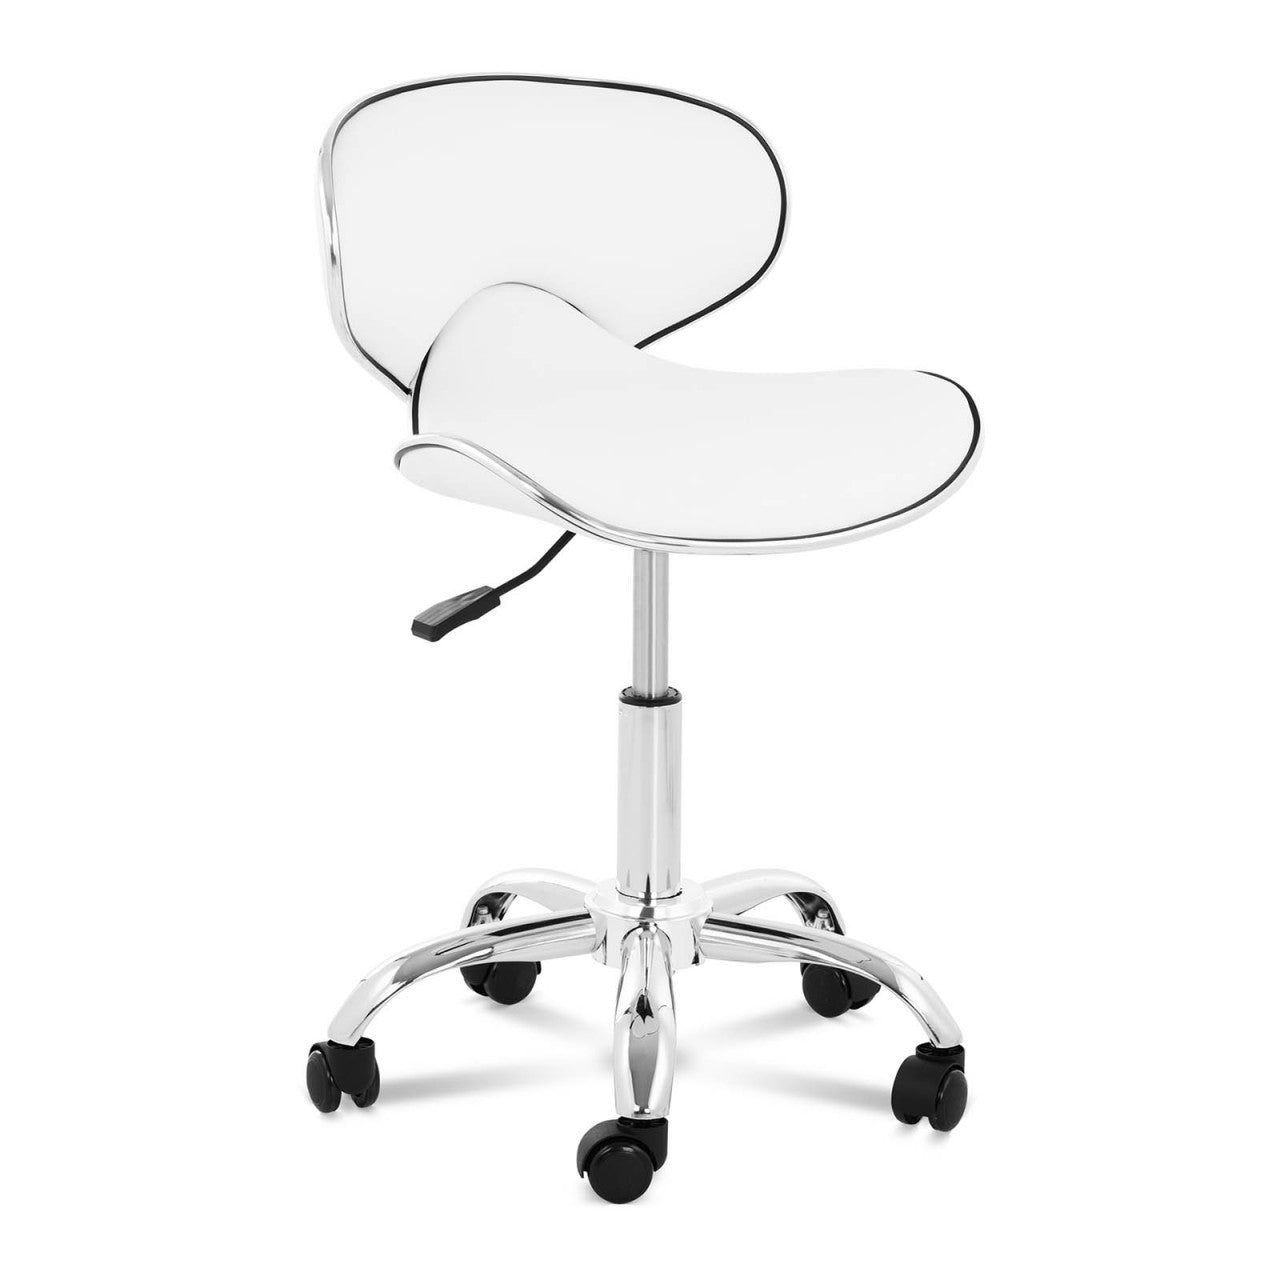 Fauteuil à roulette tabouret chaise de bureau blanc bur09021 - Conforama